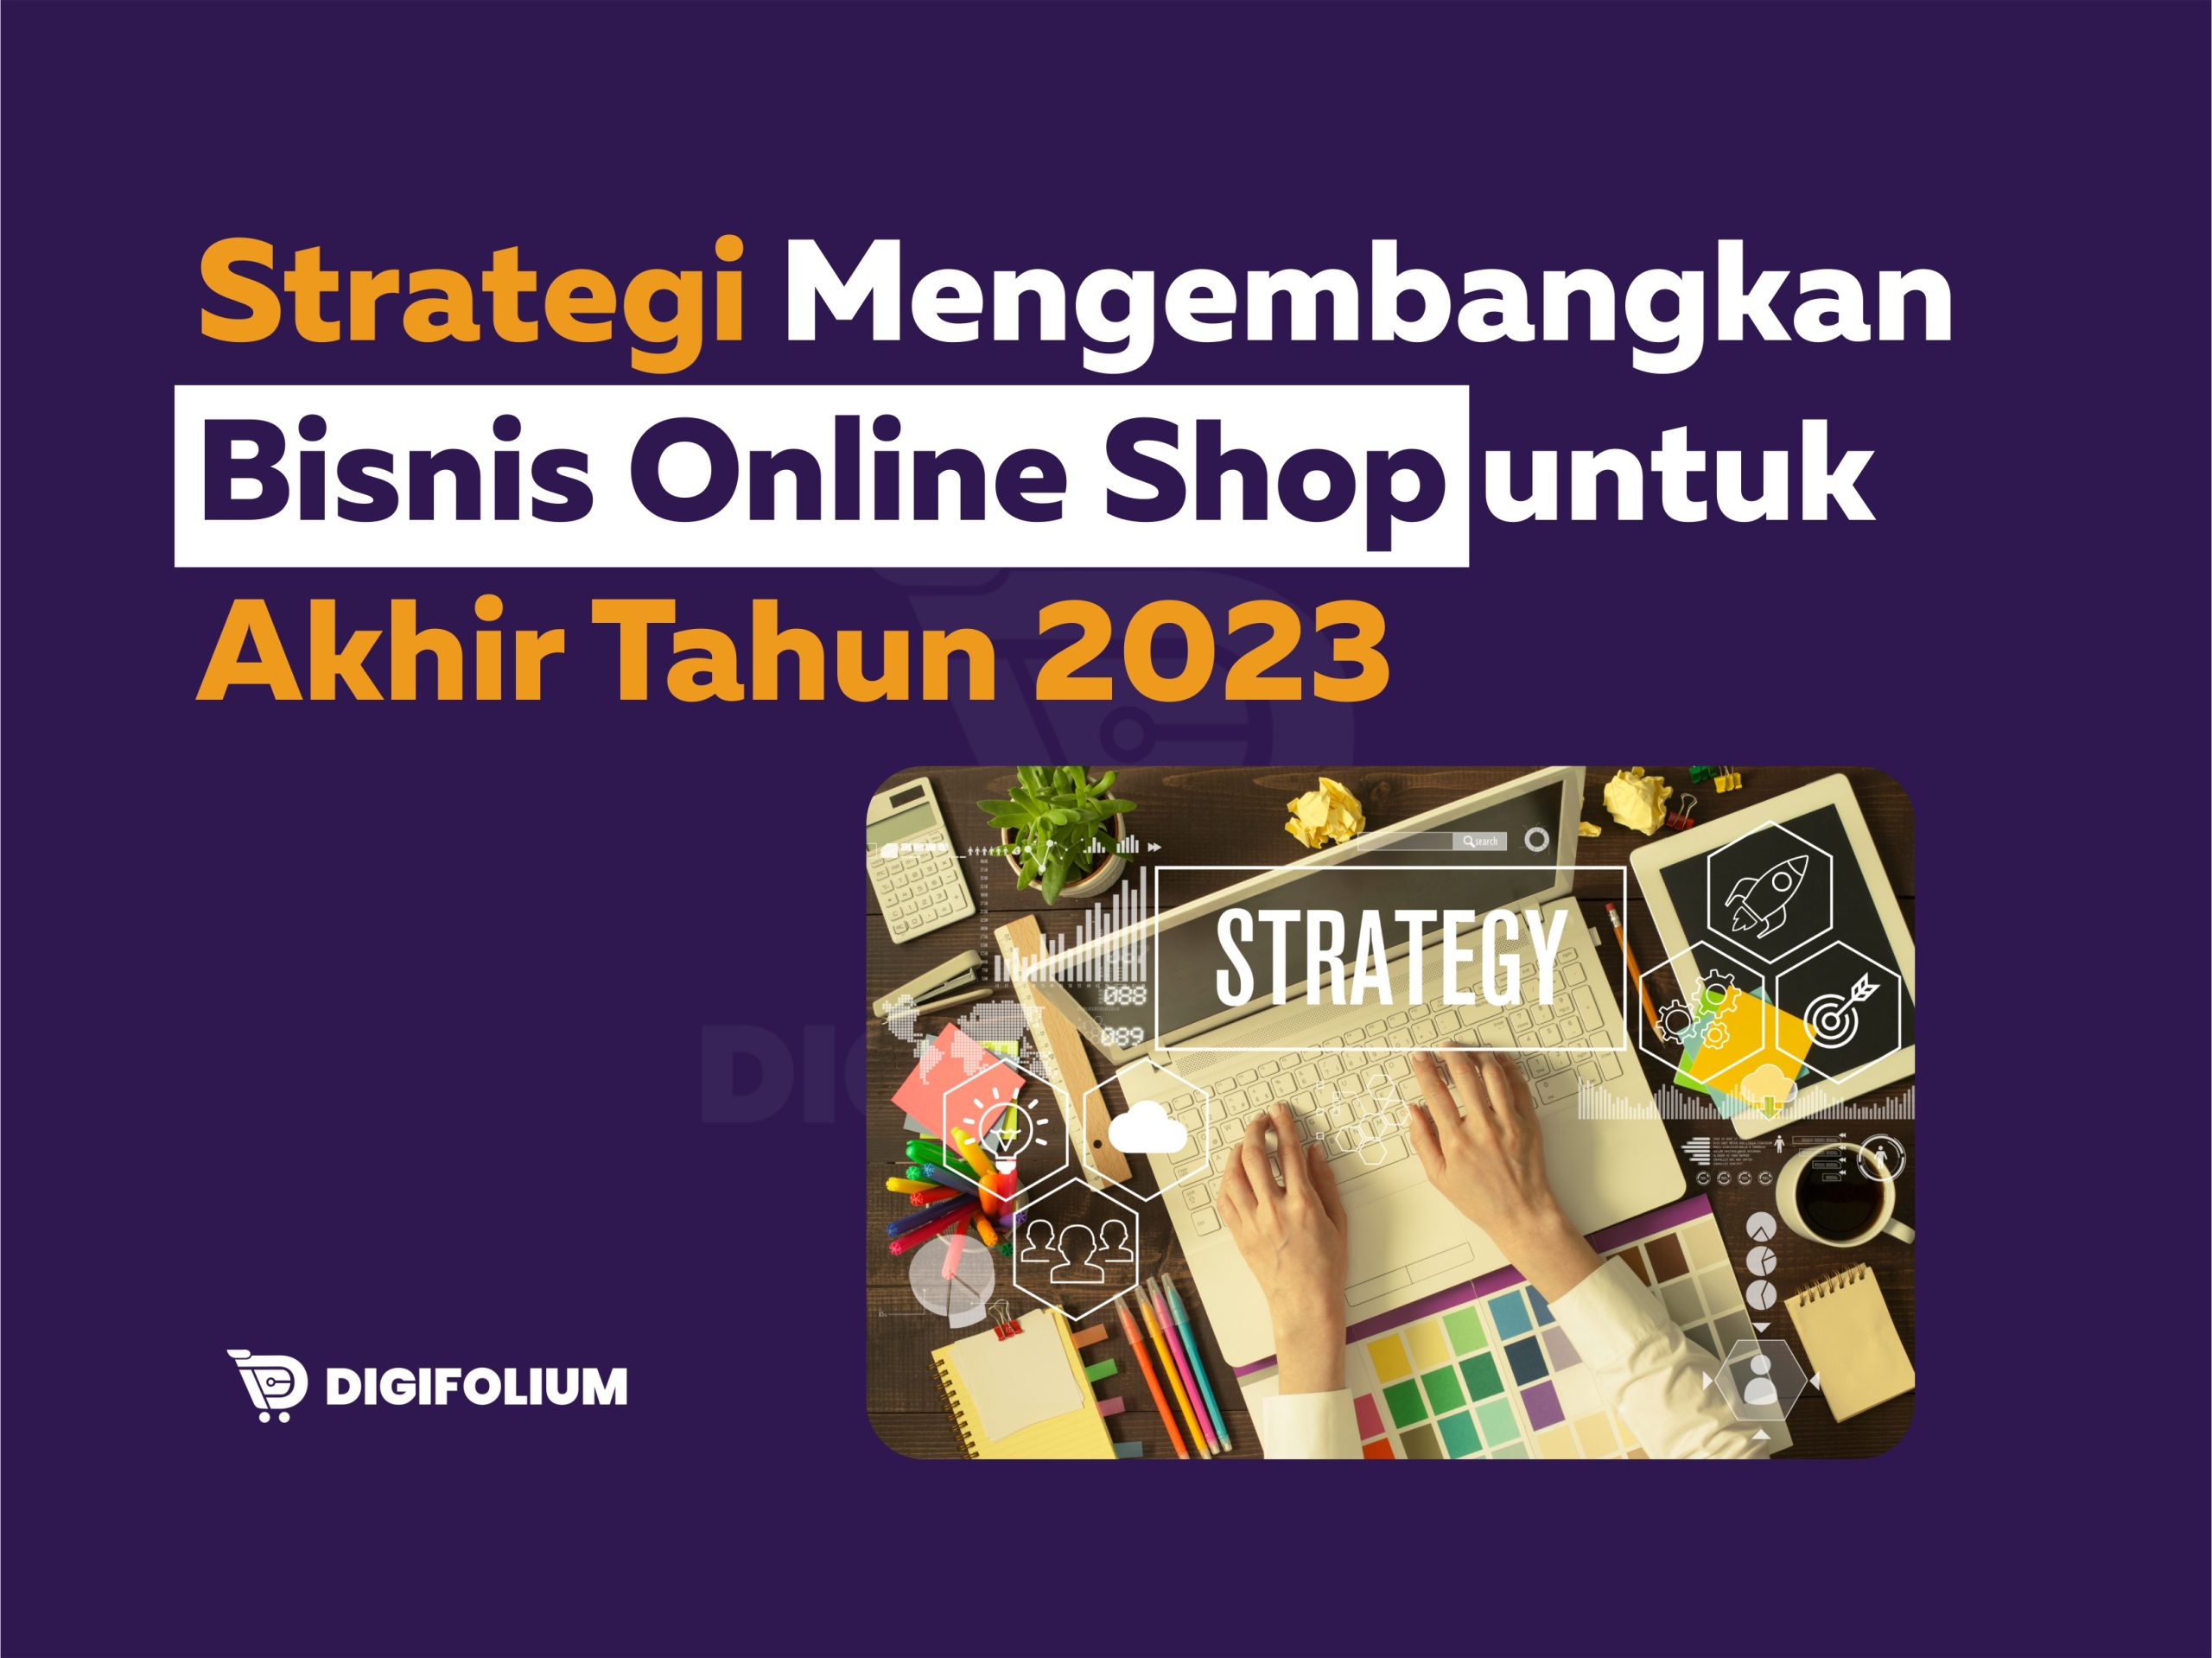 Strategi Mengembangkan Bisnis Online shop untuk Akhir Tahun 2023